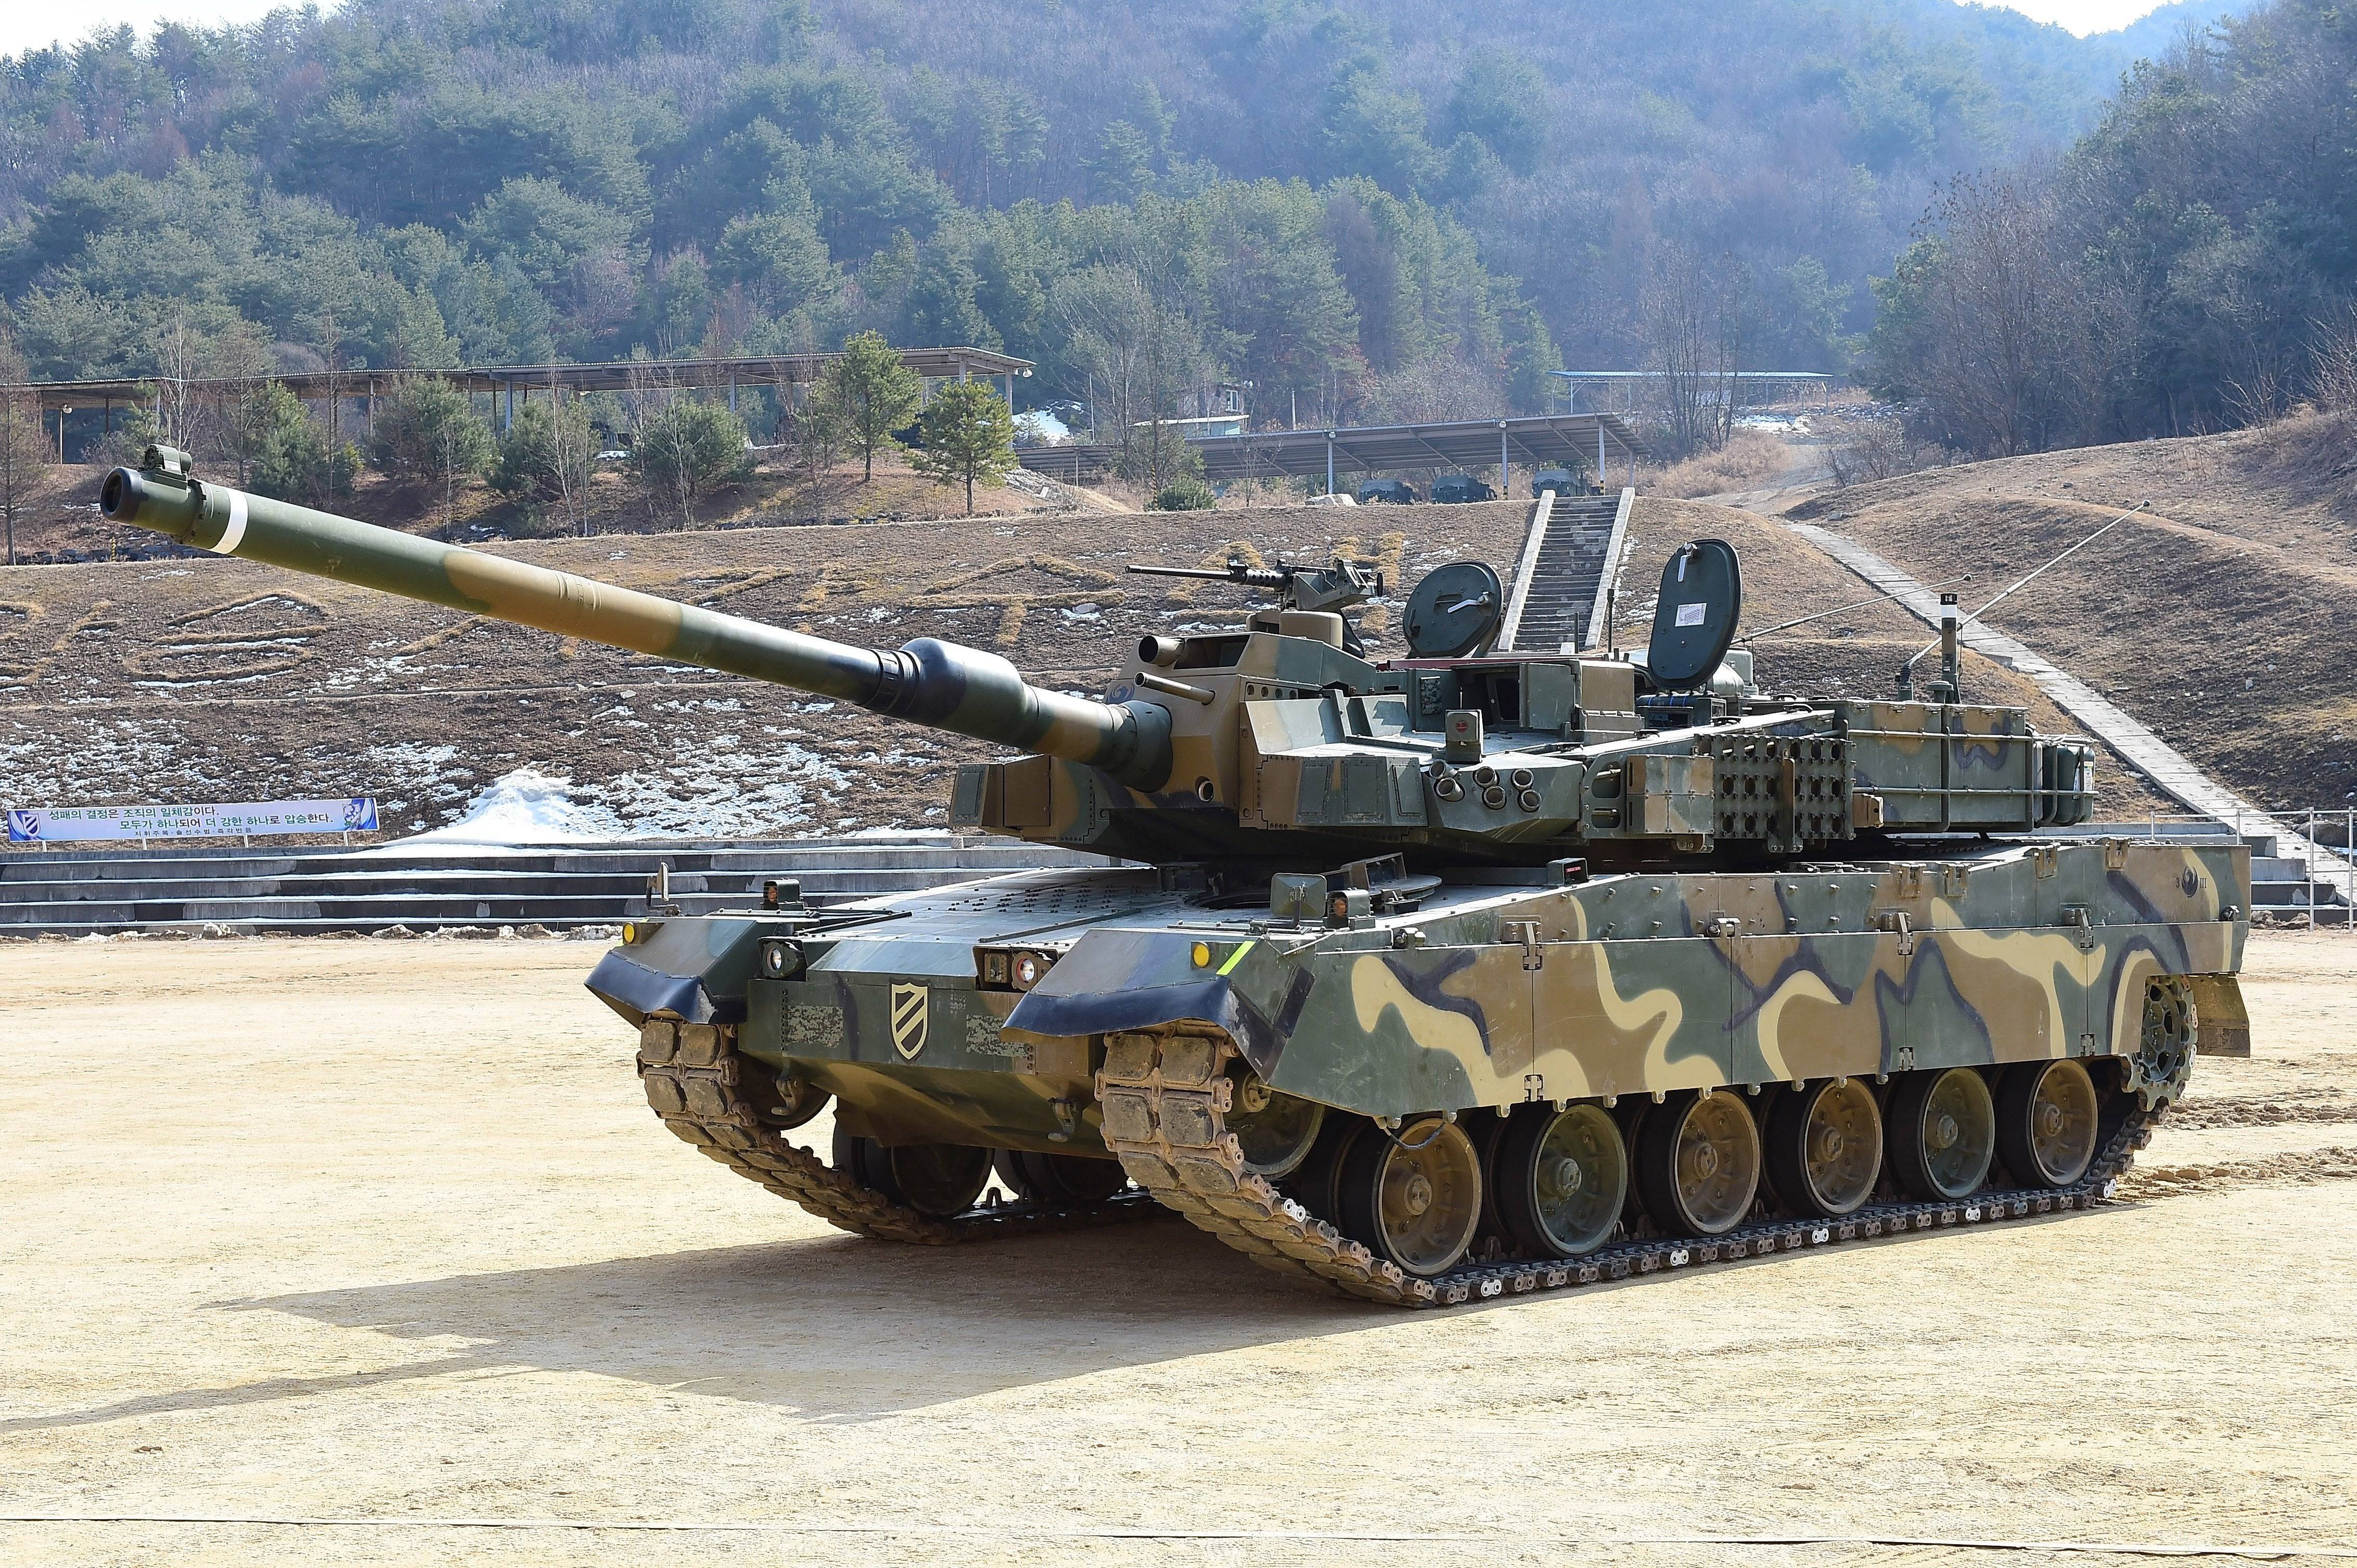 Танк «черная пантера». южнокорейский перспективный основной боевой танк нового поколения